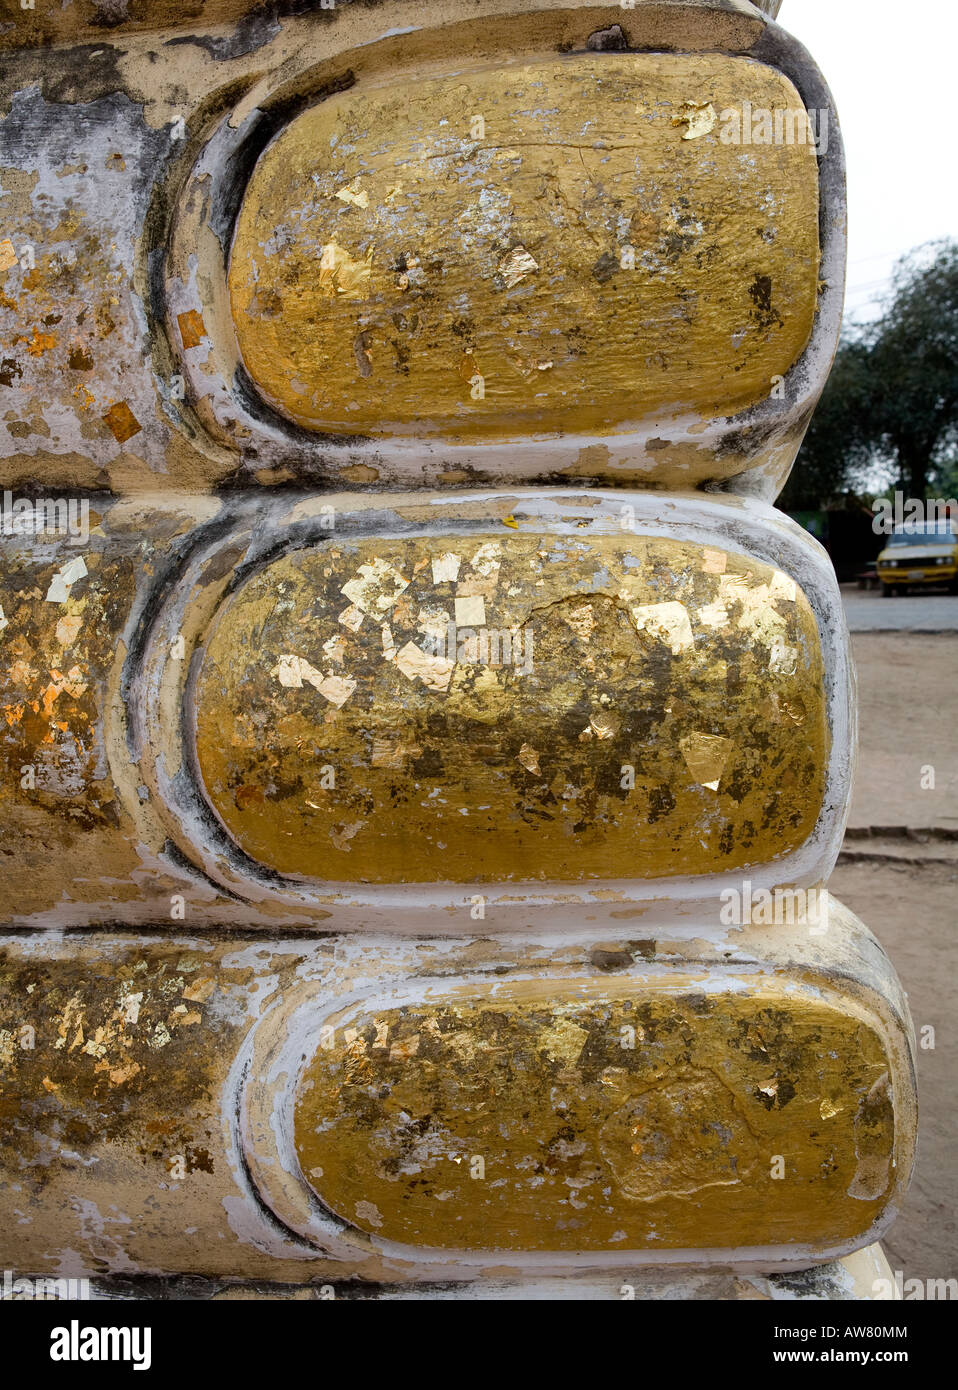 Golden Giant orteils sur le Bouddha couché ville antique d'Ayuthaya Thaïlande Asie du sud-est Banque D'Images